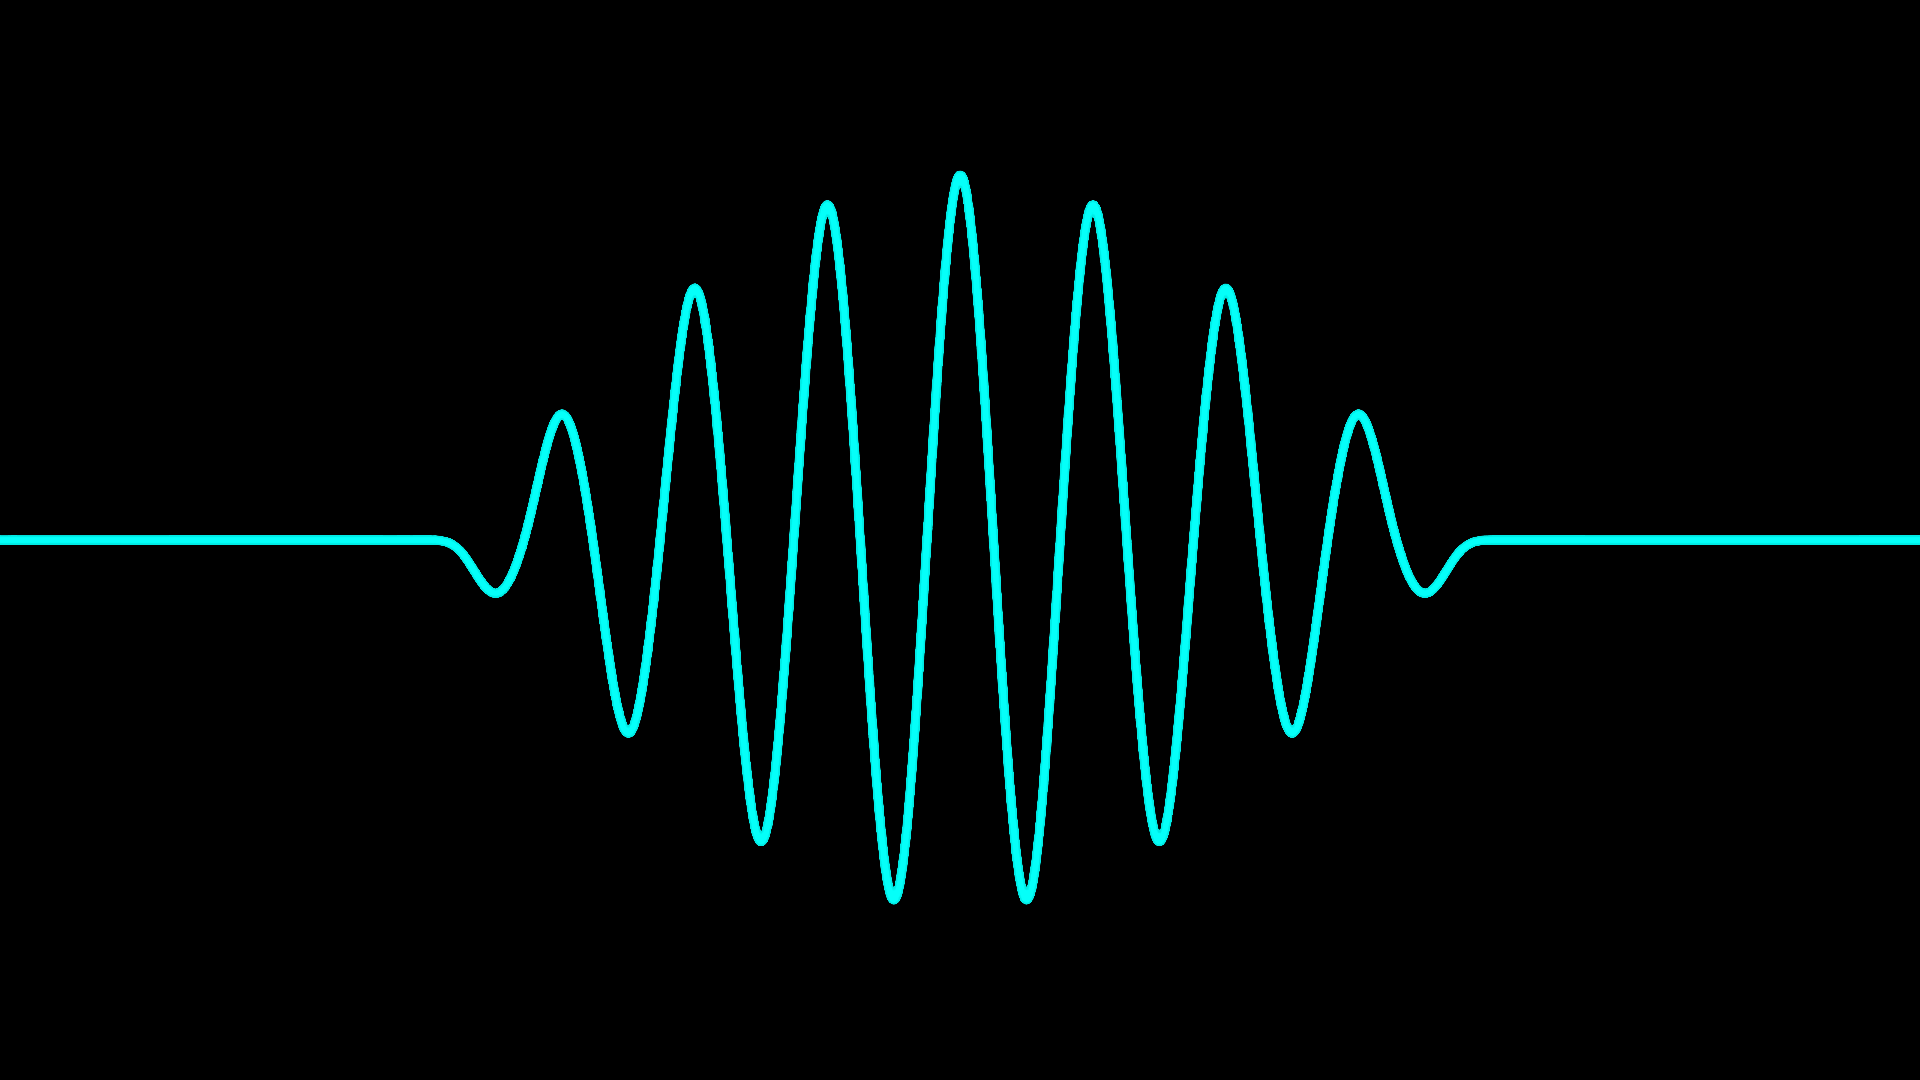 Звук громкого удара. Звуковая волна. Музыкальная волна. Визуализация звуковых волн. Волны звука.